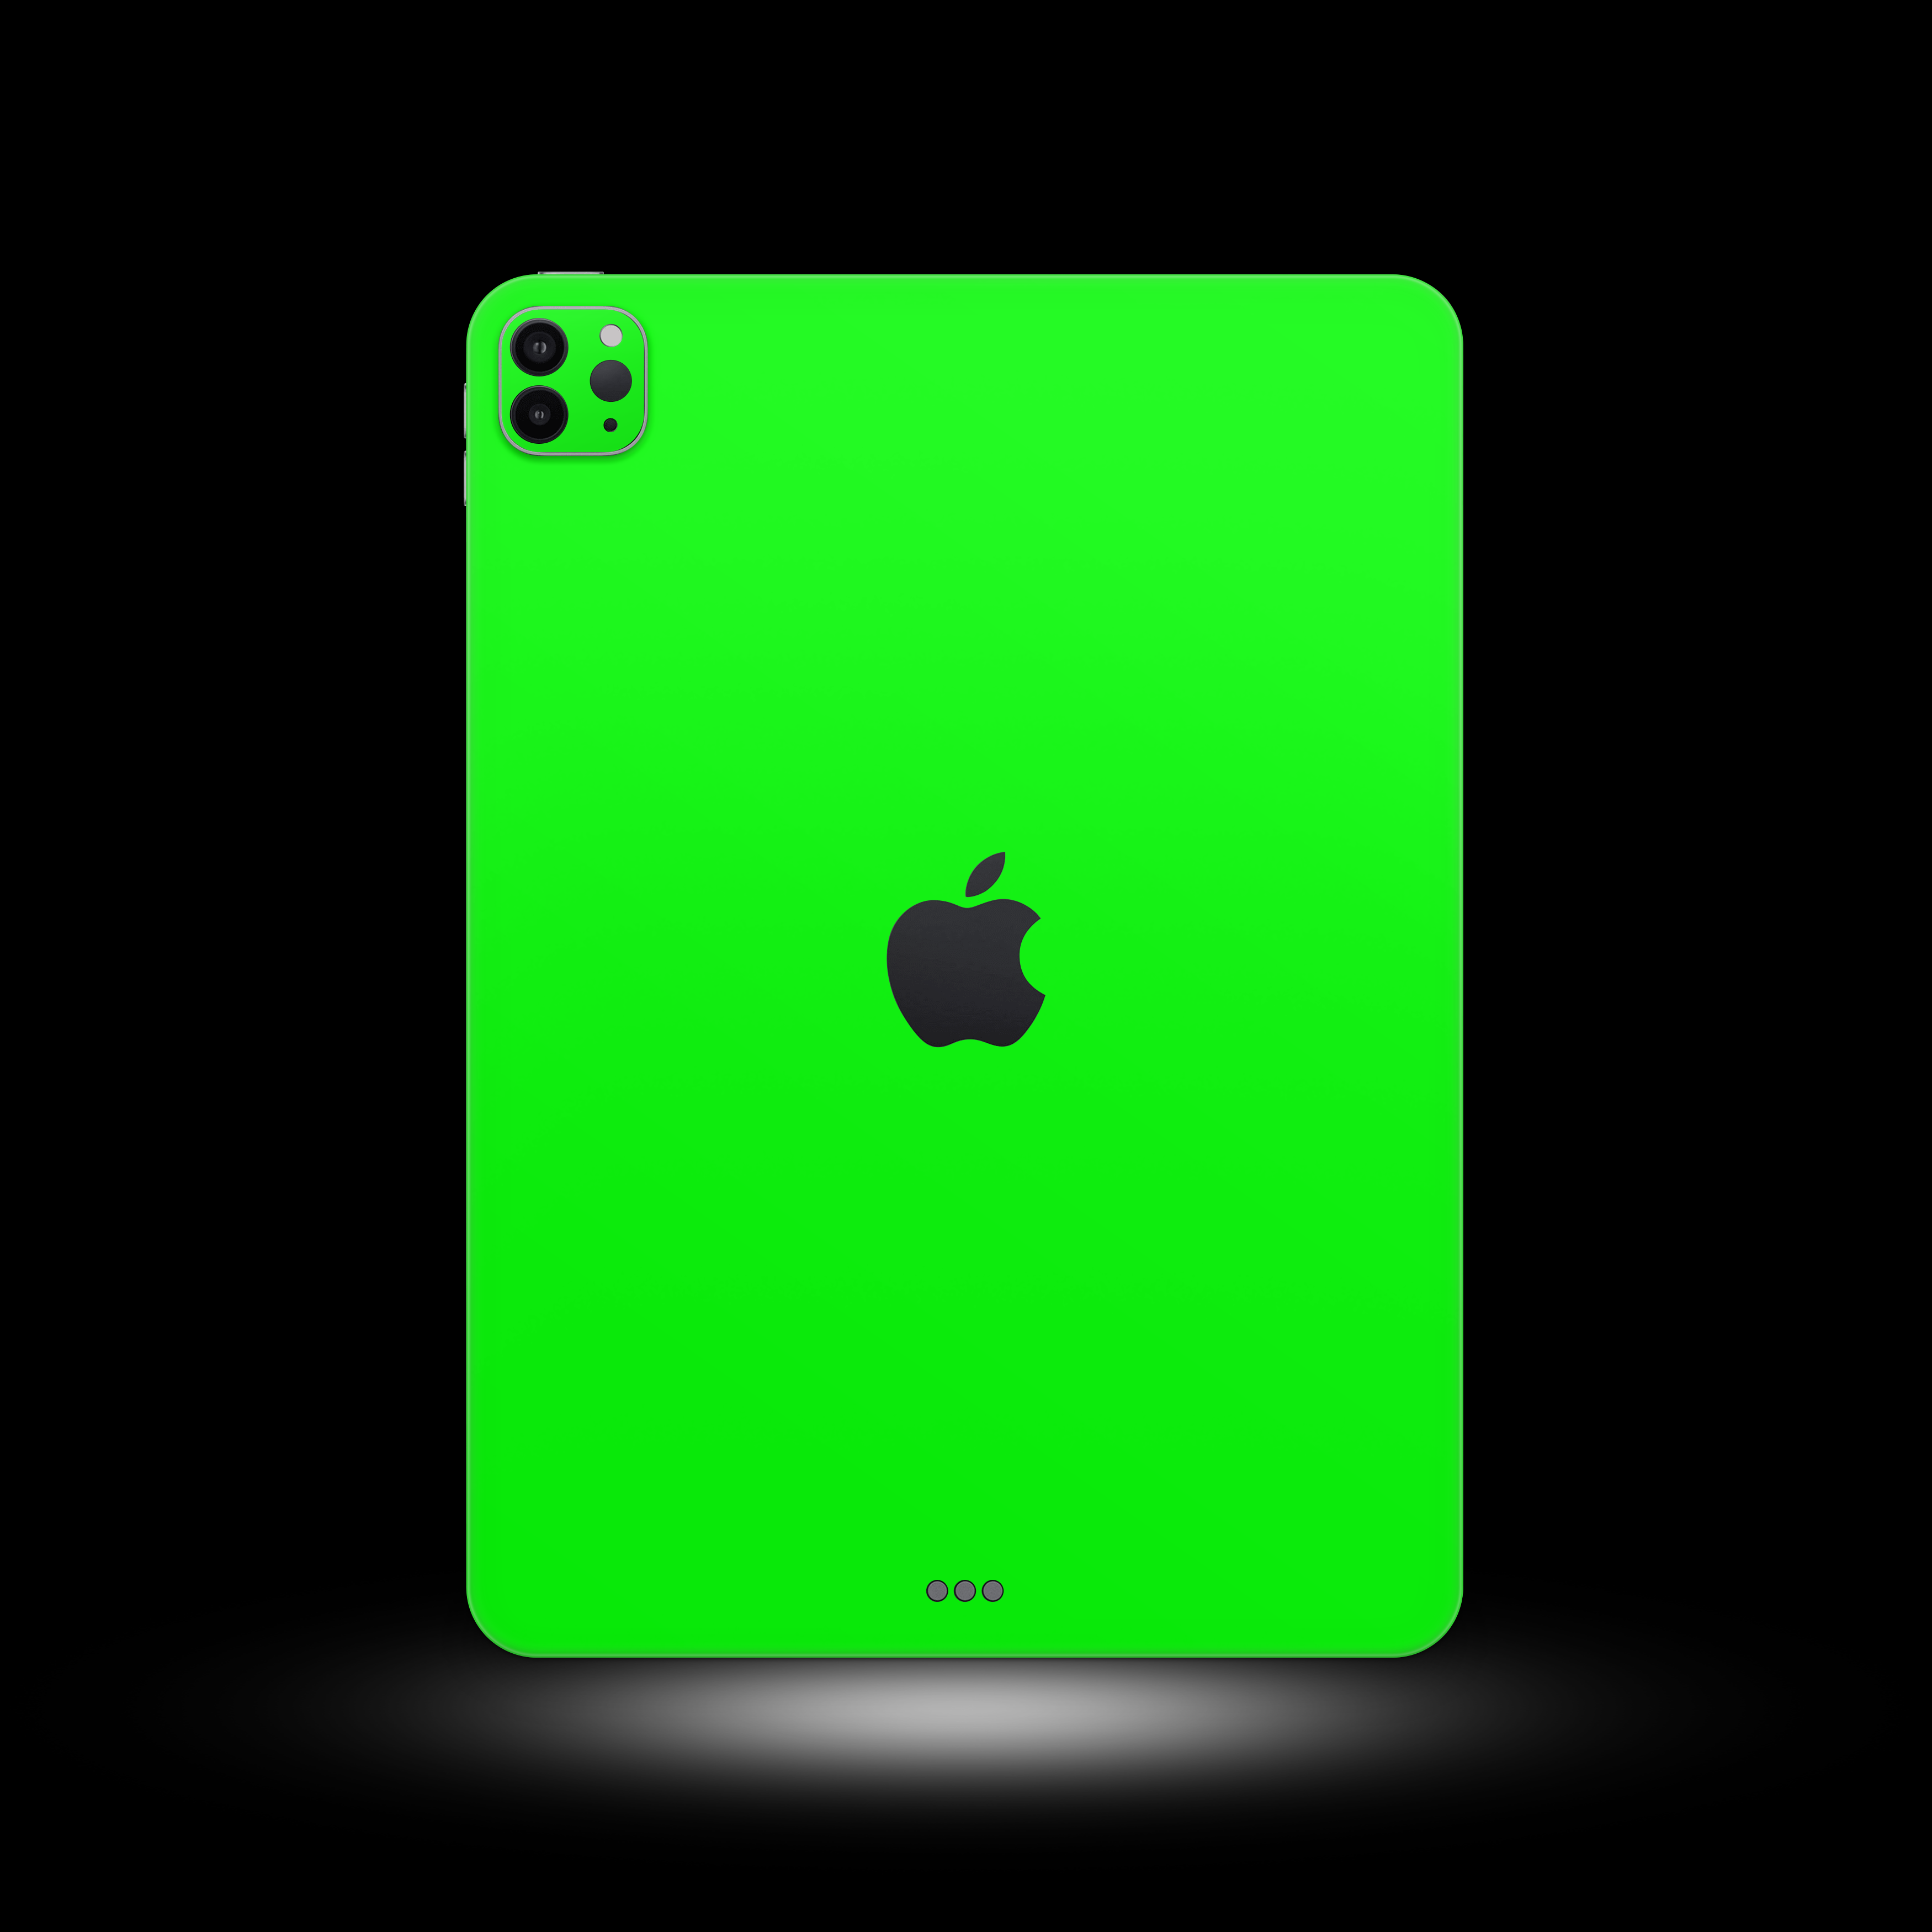 Neon Green (iPad Skin)